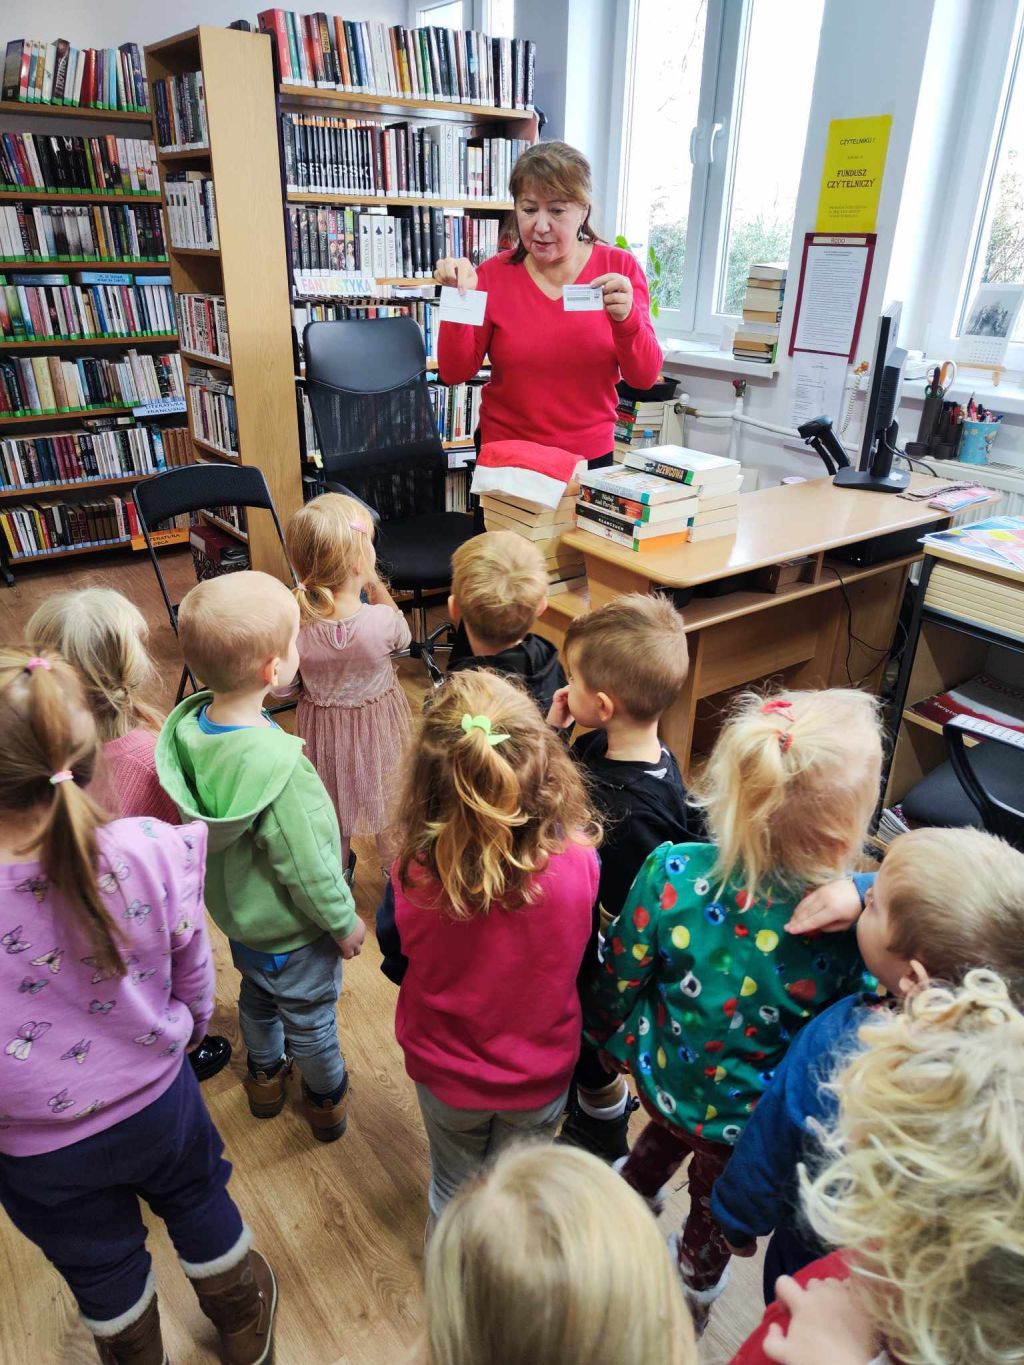 Przedszkolaki zwiedzają bibliotekę. Zdjęcie jest odnośnikiem do wpisu "Zagubione renifery".